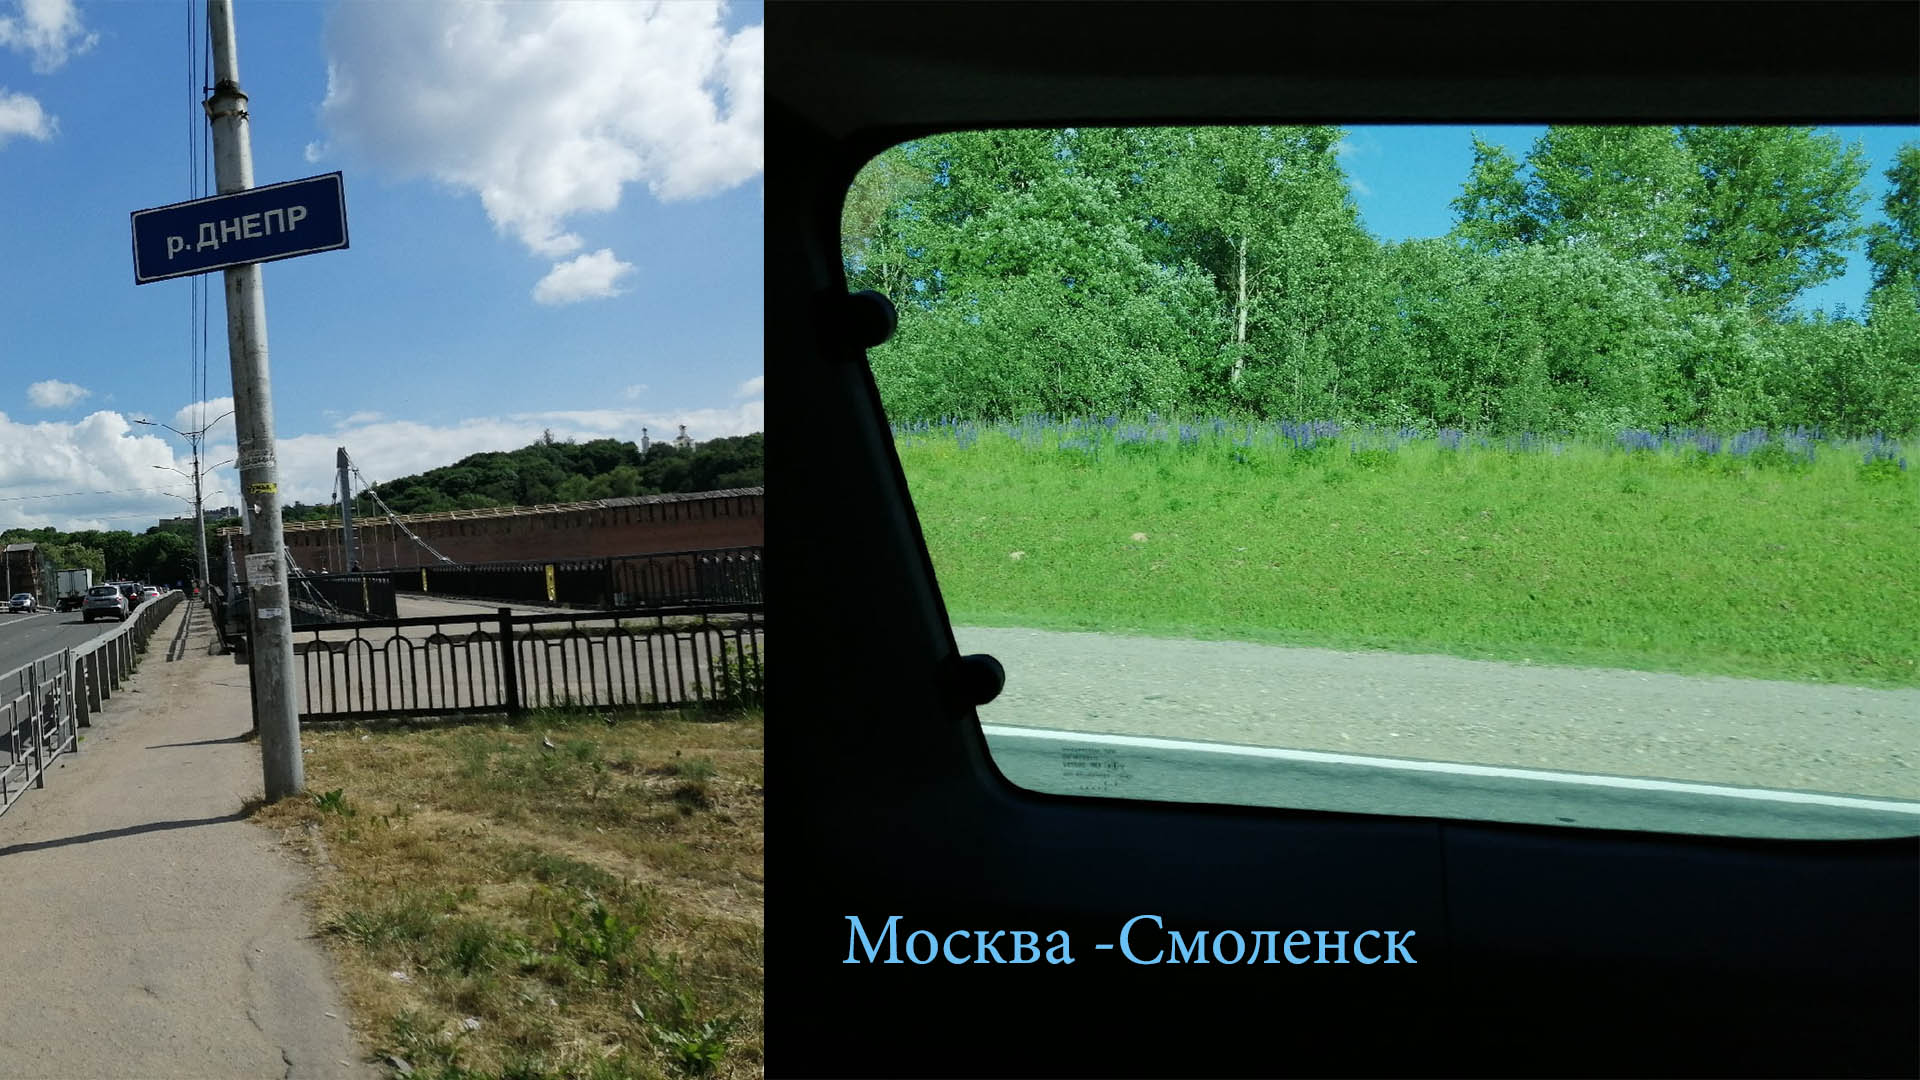 Поездка Москва - Смоленск мой отзыв и впечатления о городе